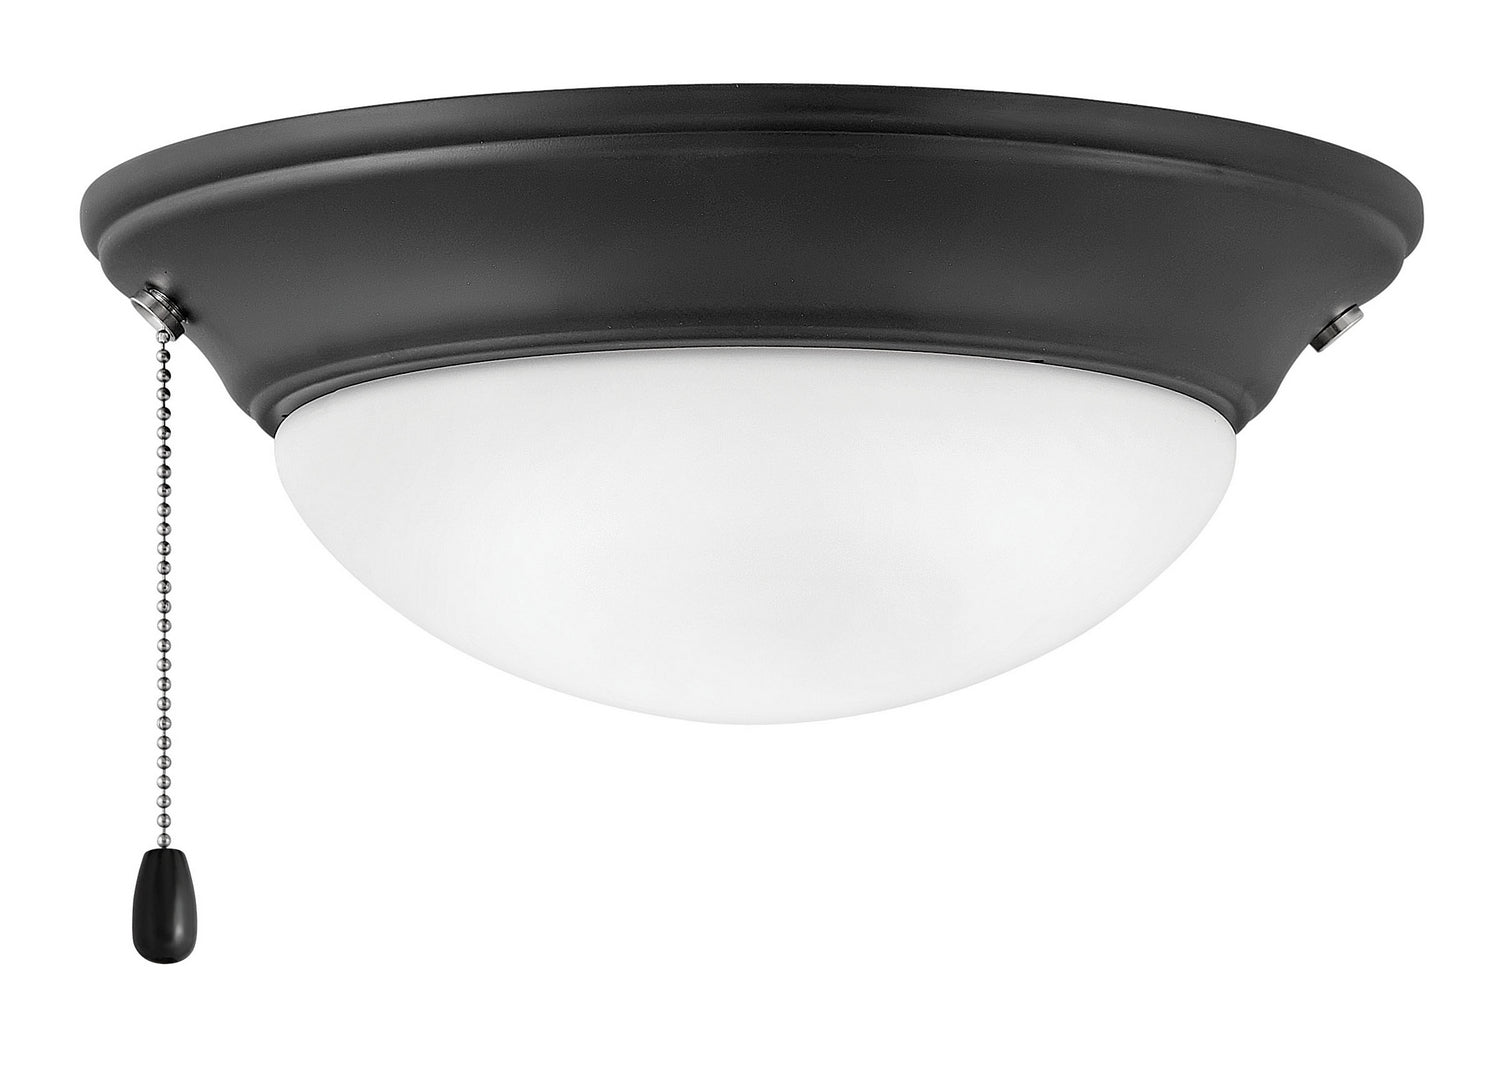 Hinkley Canada - LED Fan Light Kit - Light Kit - Matte Black- Union Lighting Luminaires Decor